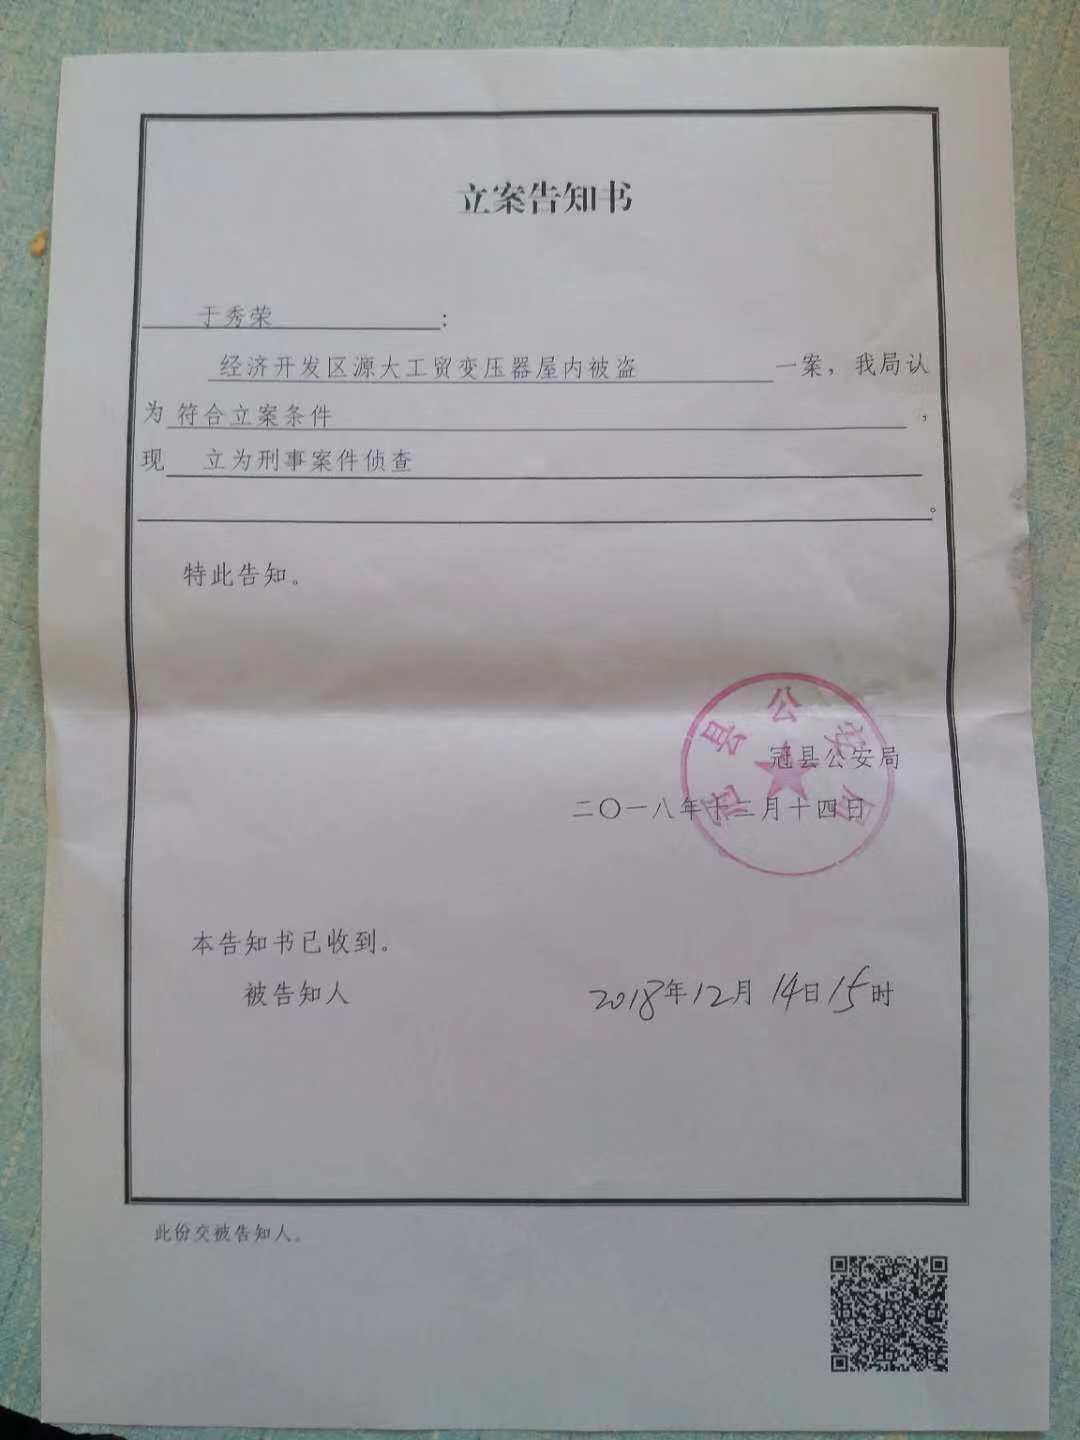 12月20日,于秀荣从冠县公安局拿到了立案告知书,该告知书写明:于秀荣